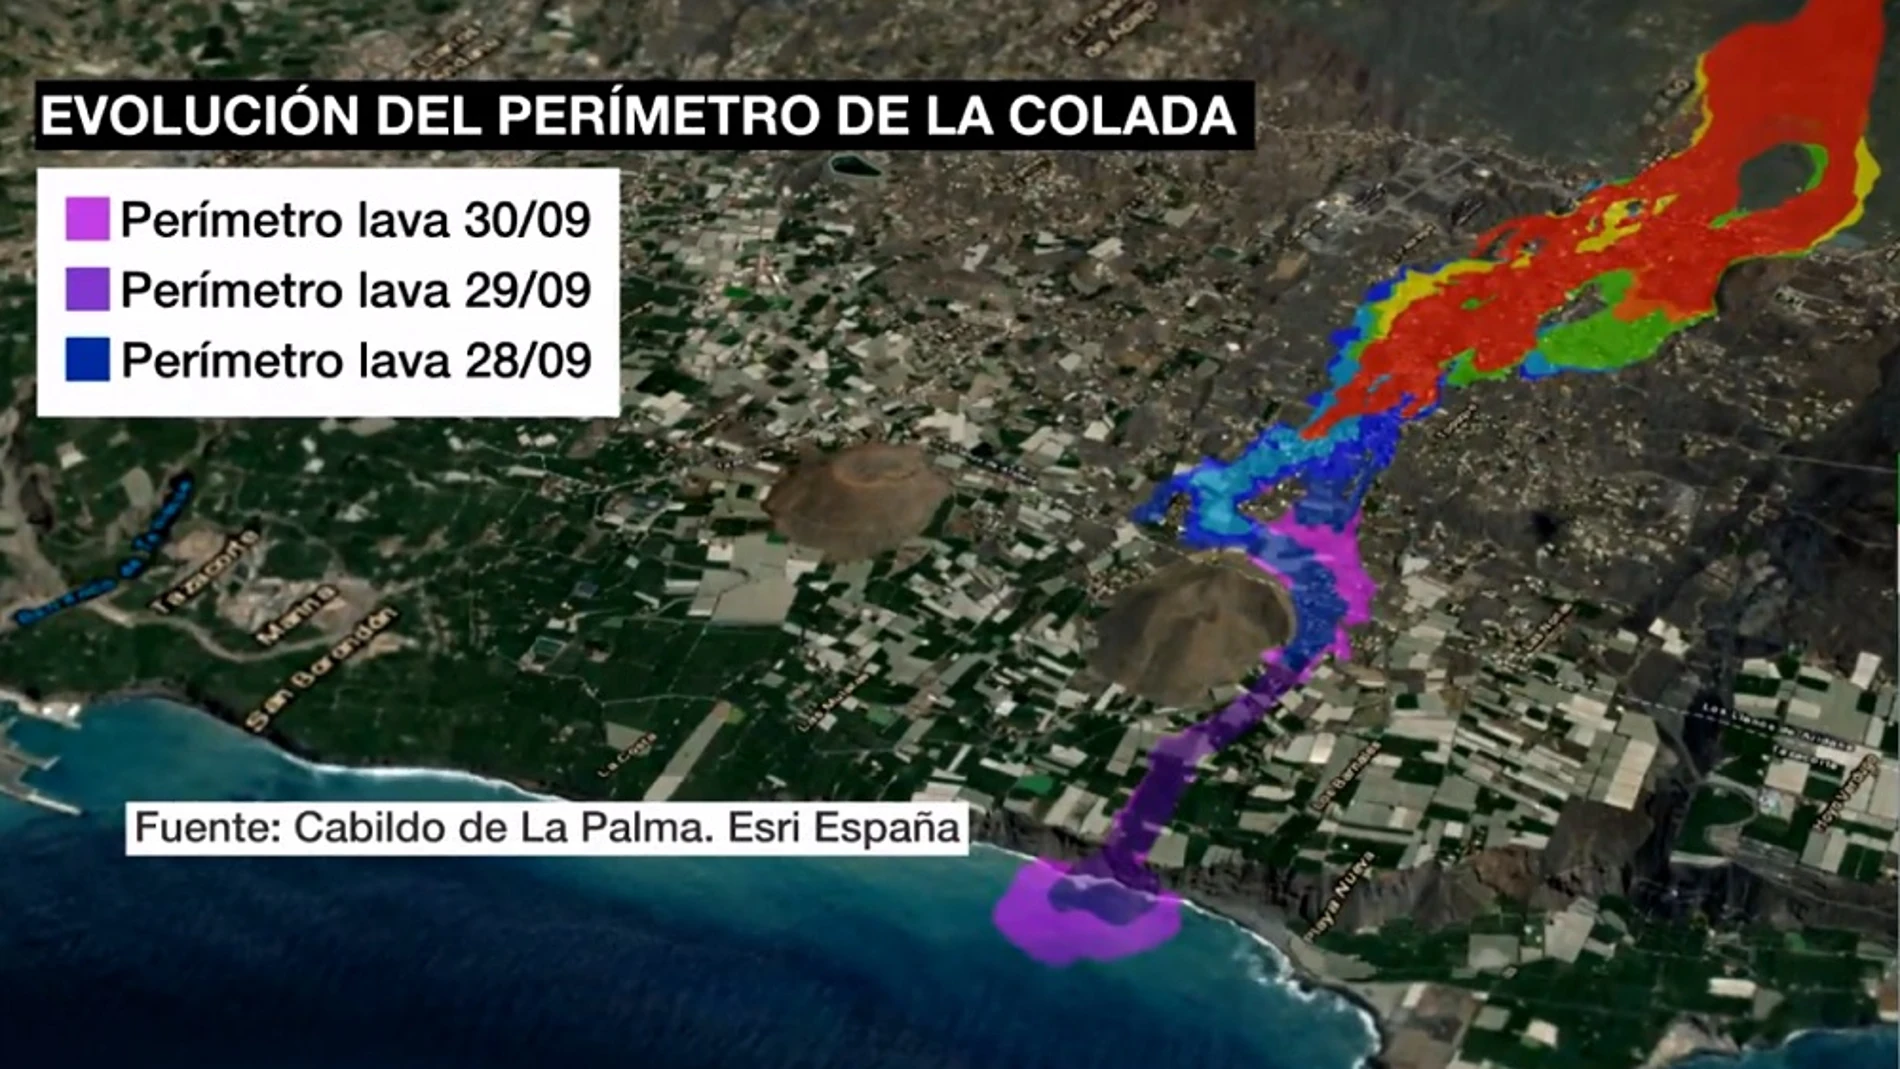 Mapa de La Palma